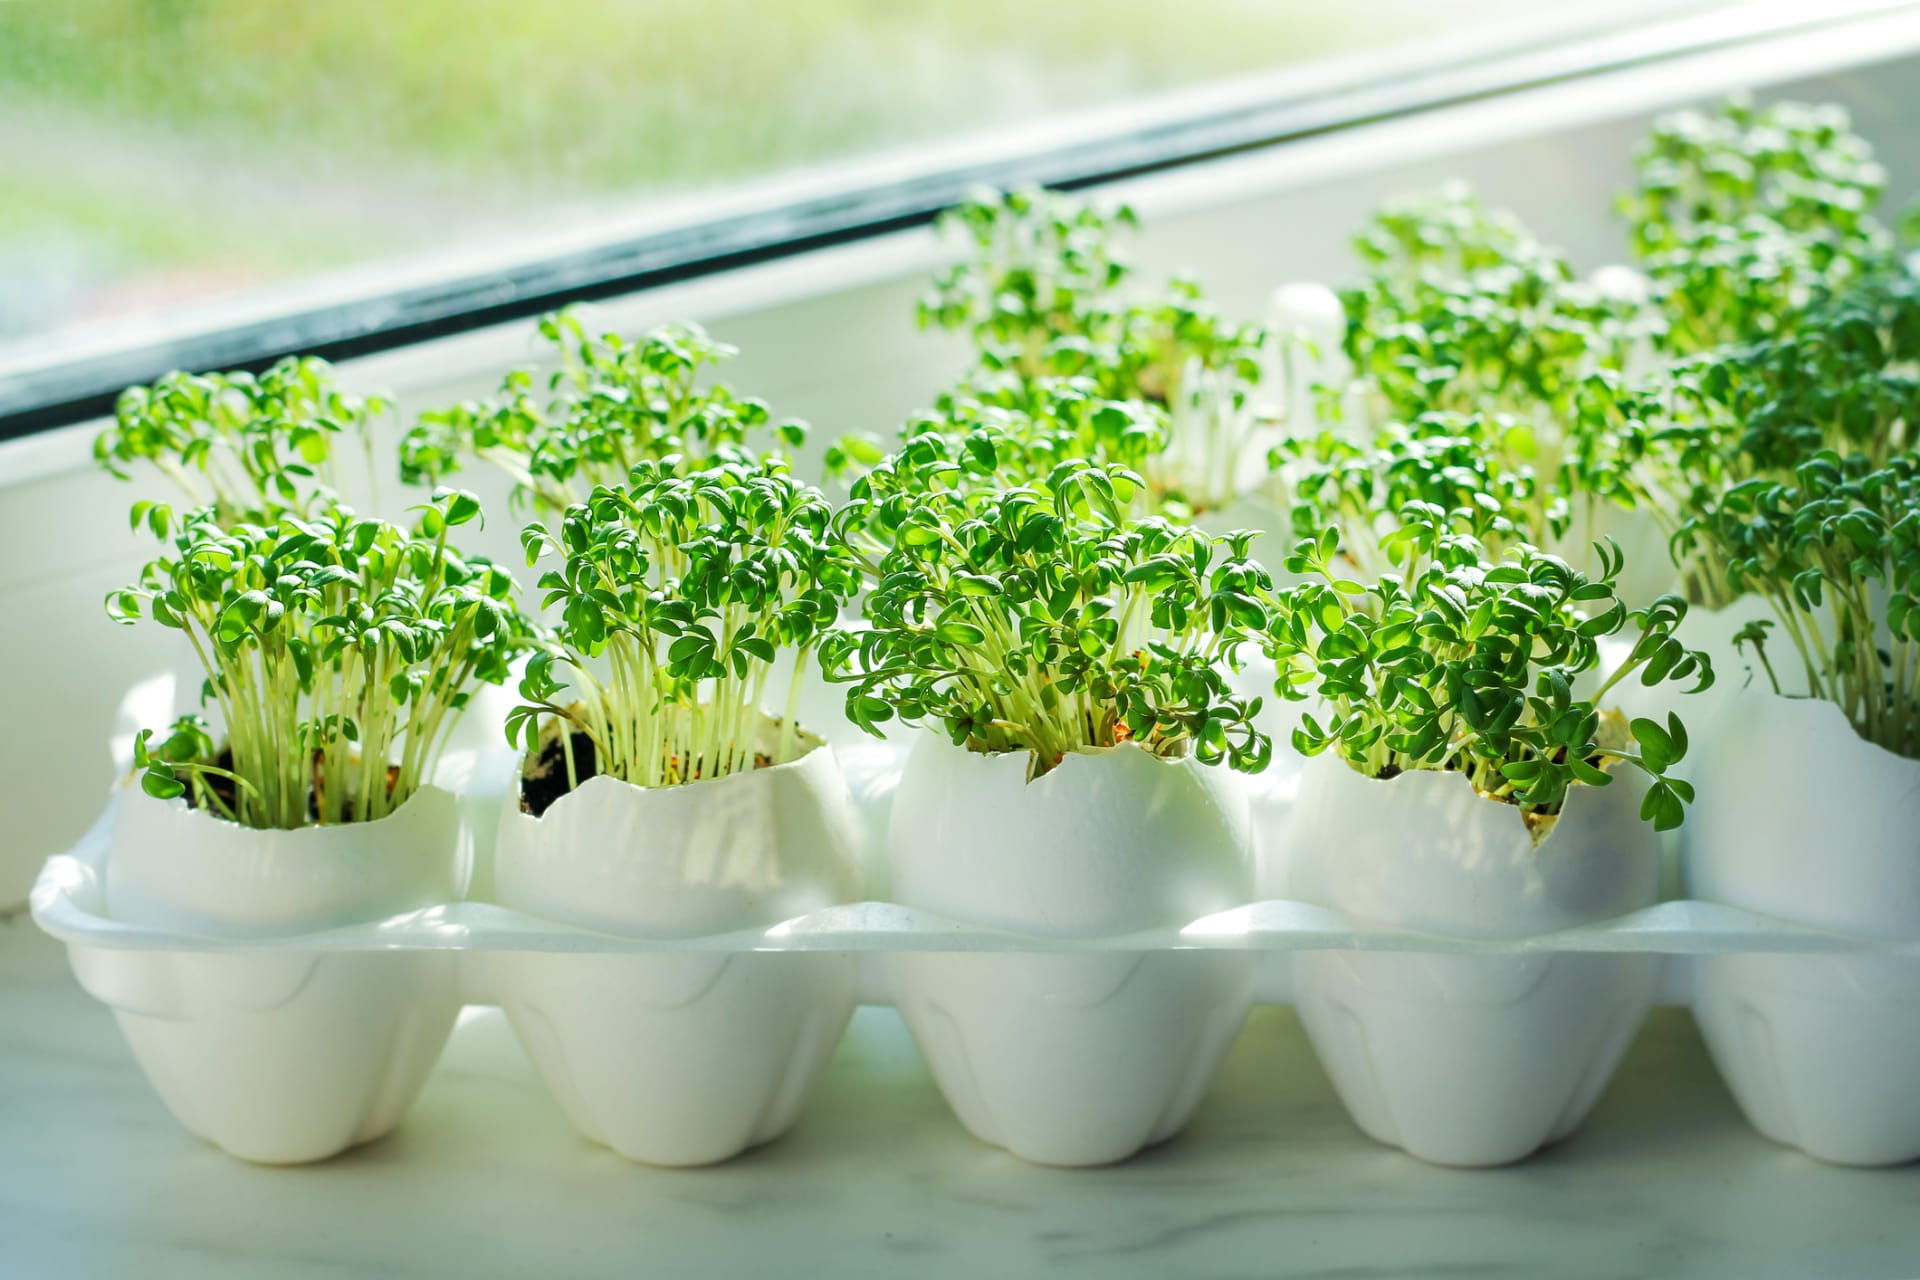 Malé rostlinky můžete vypěstovat i ve skořápkách